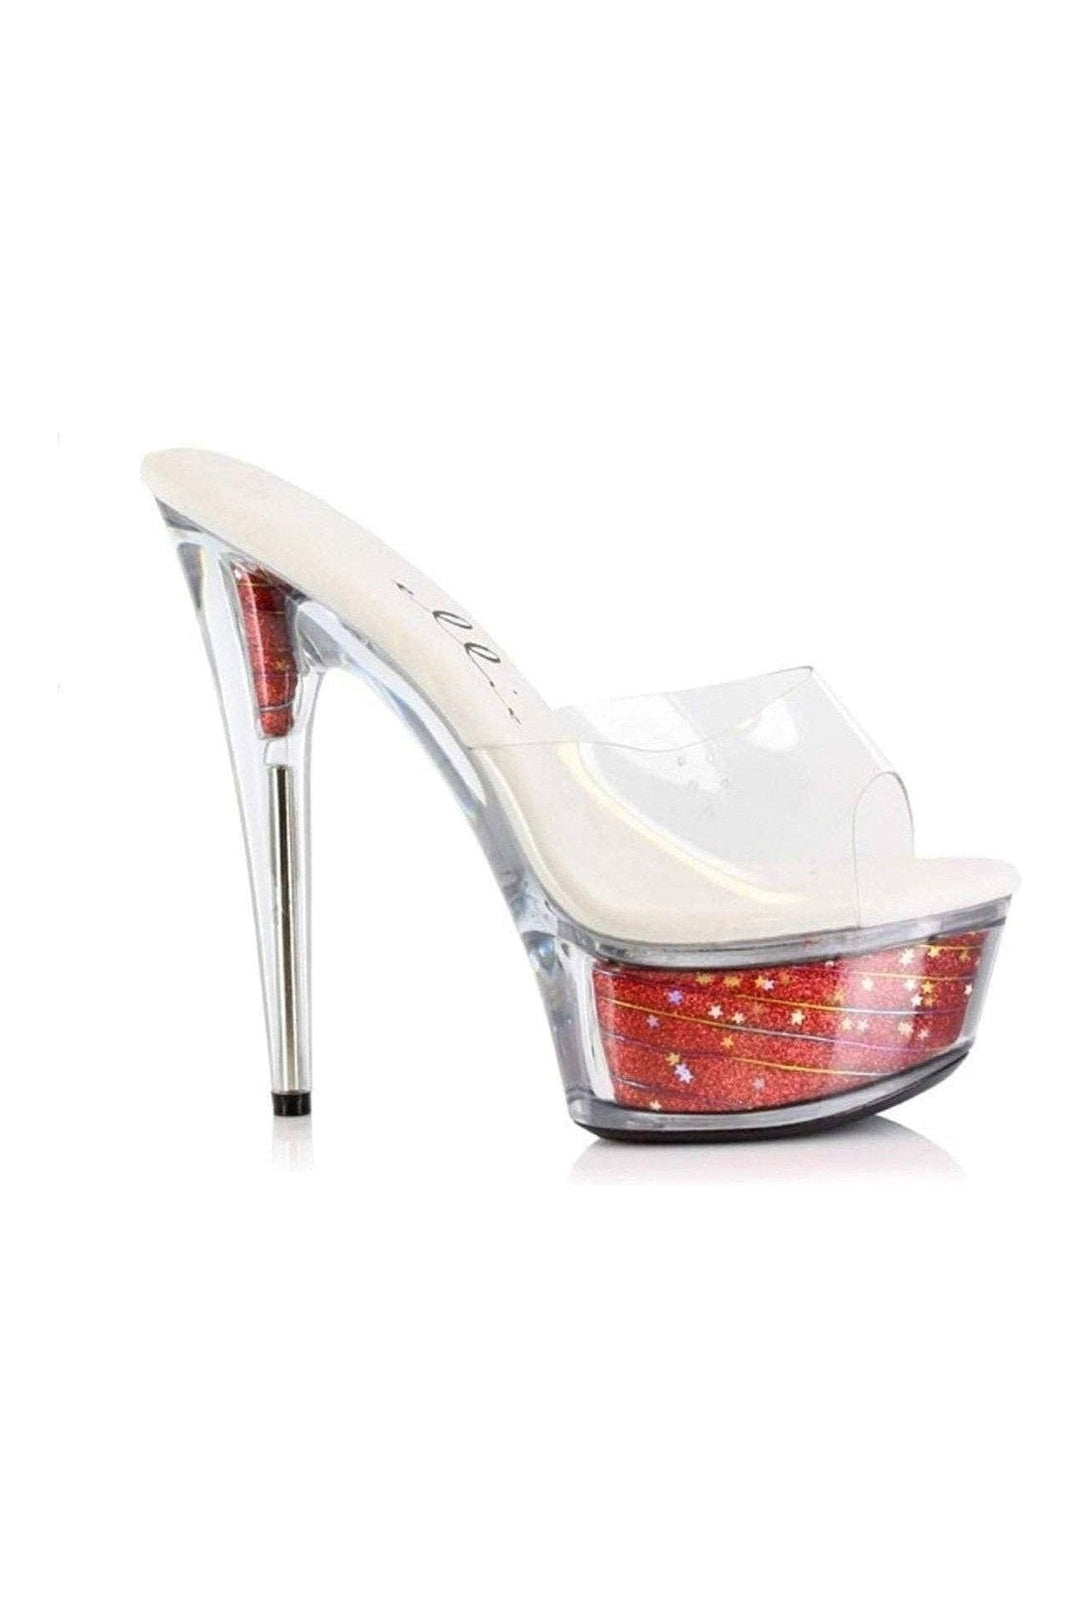 609-ESTRELLA Platform Sandal | Red Patent-Ellie Shoes-Red-Slides-SEXYSHOES.COM